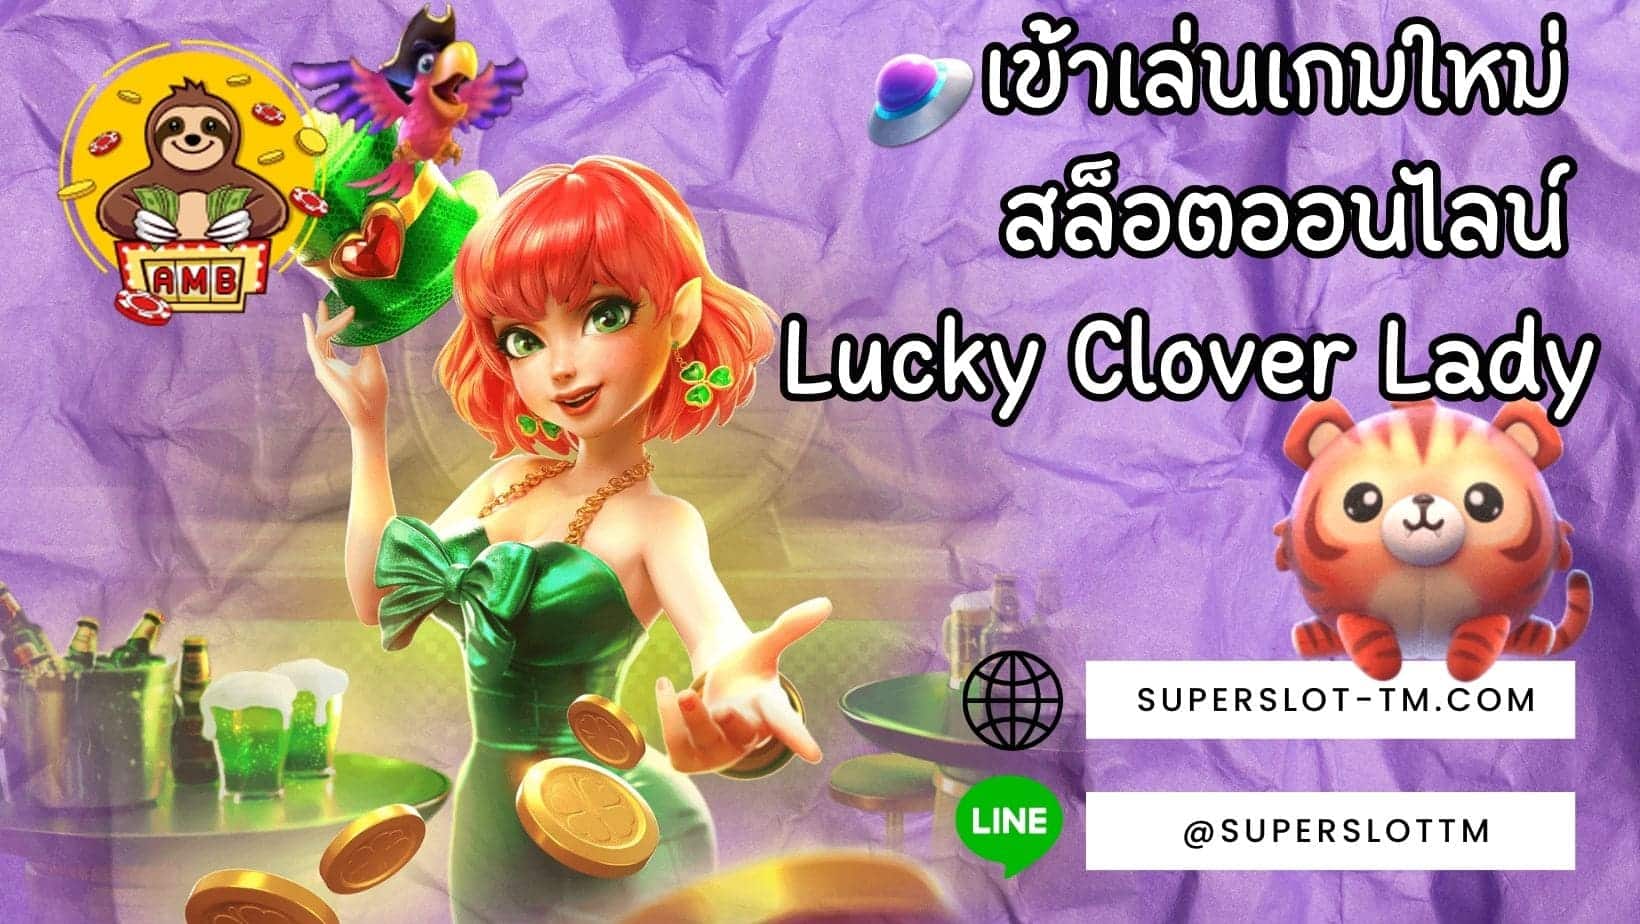 เข้าเล่นเกมใหม่ สล็อตออนไลน์ Lucky Clover Lady